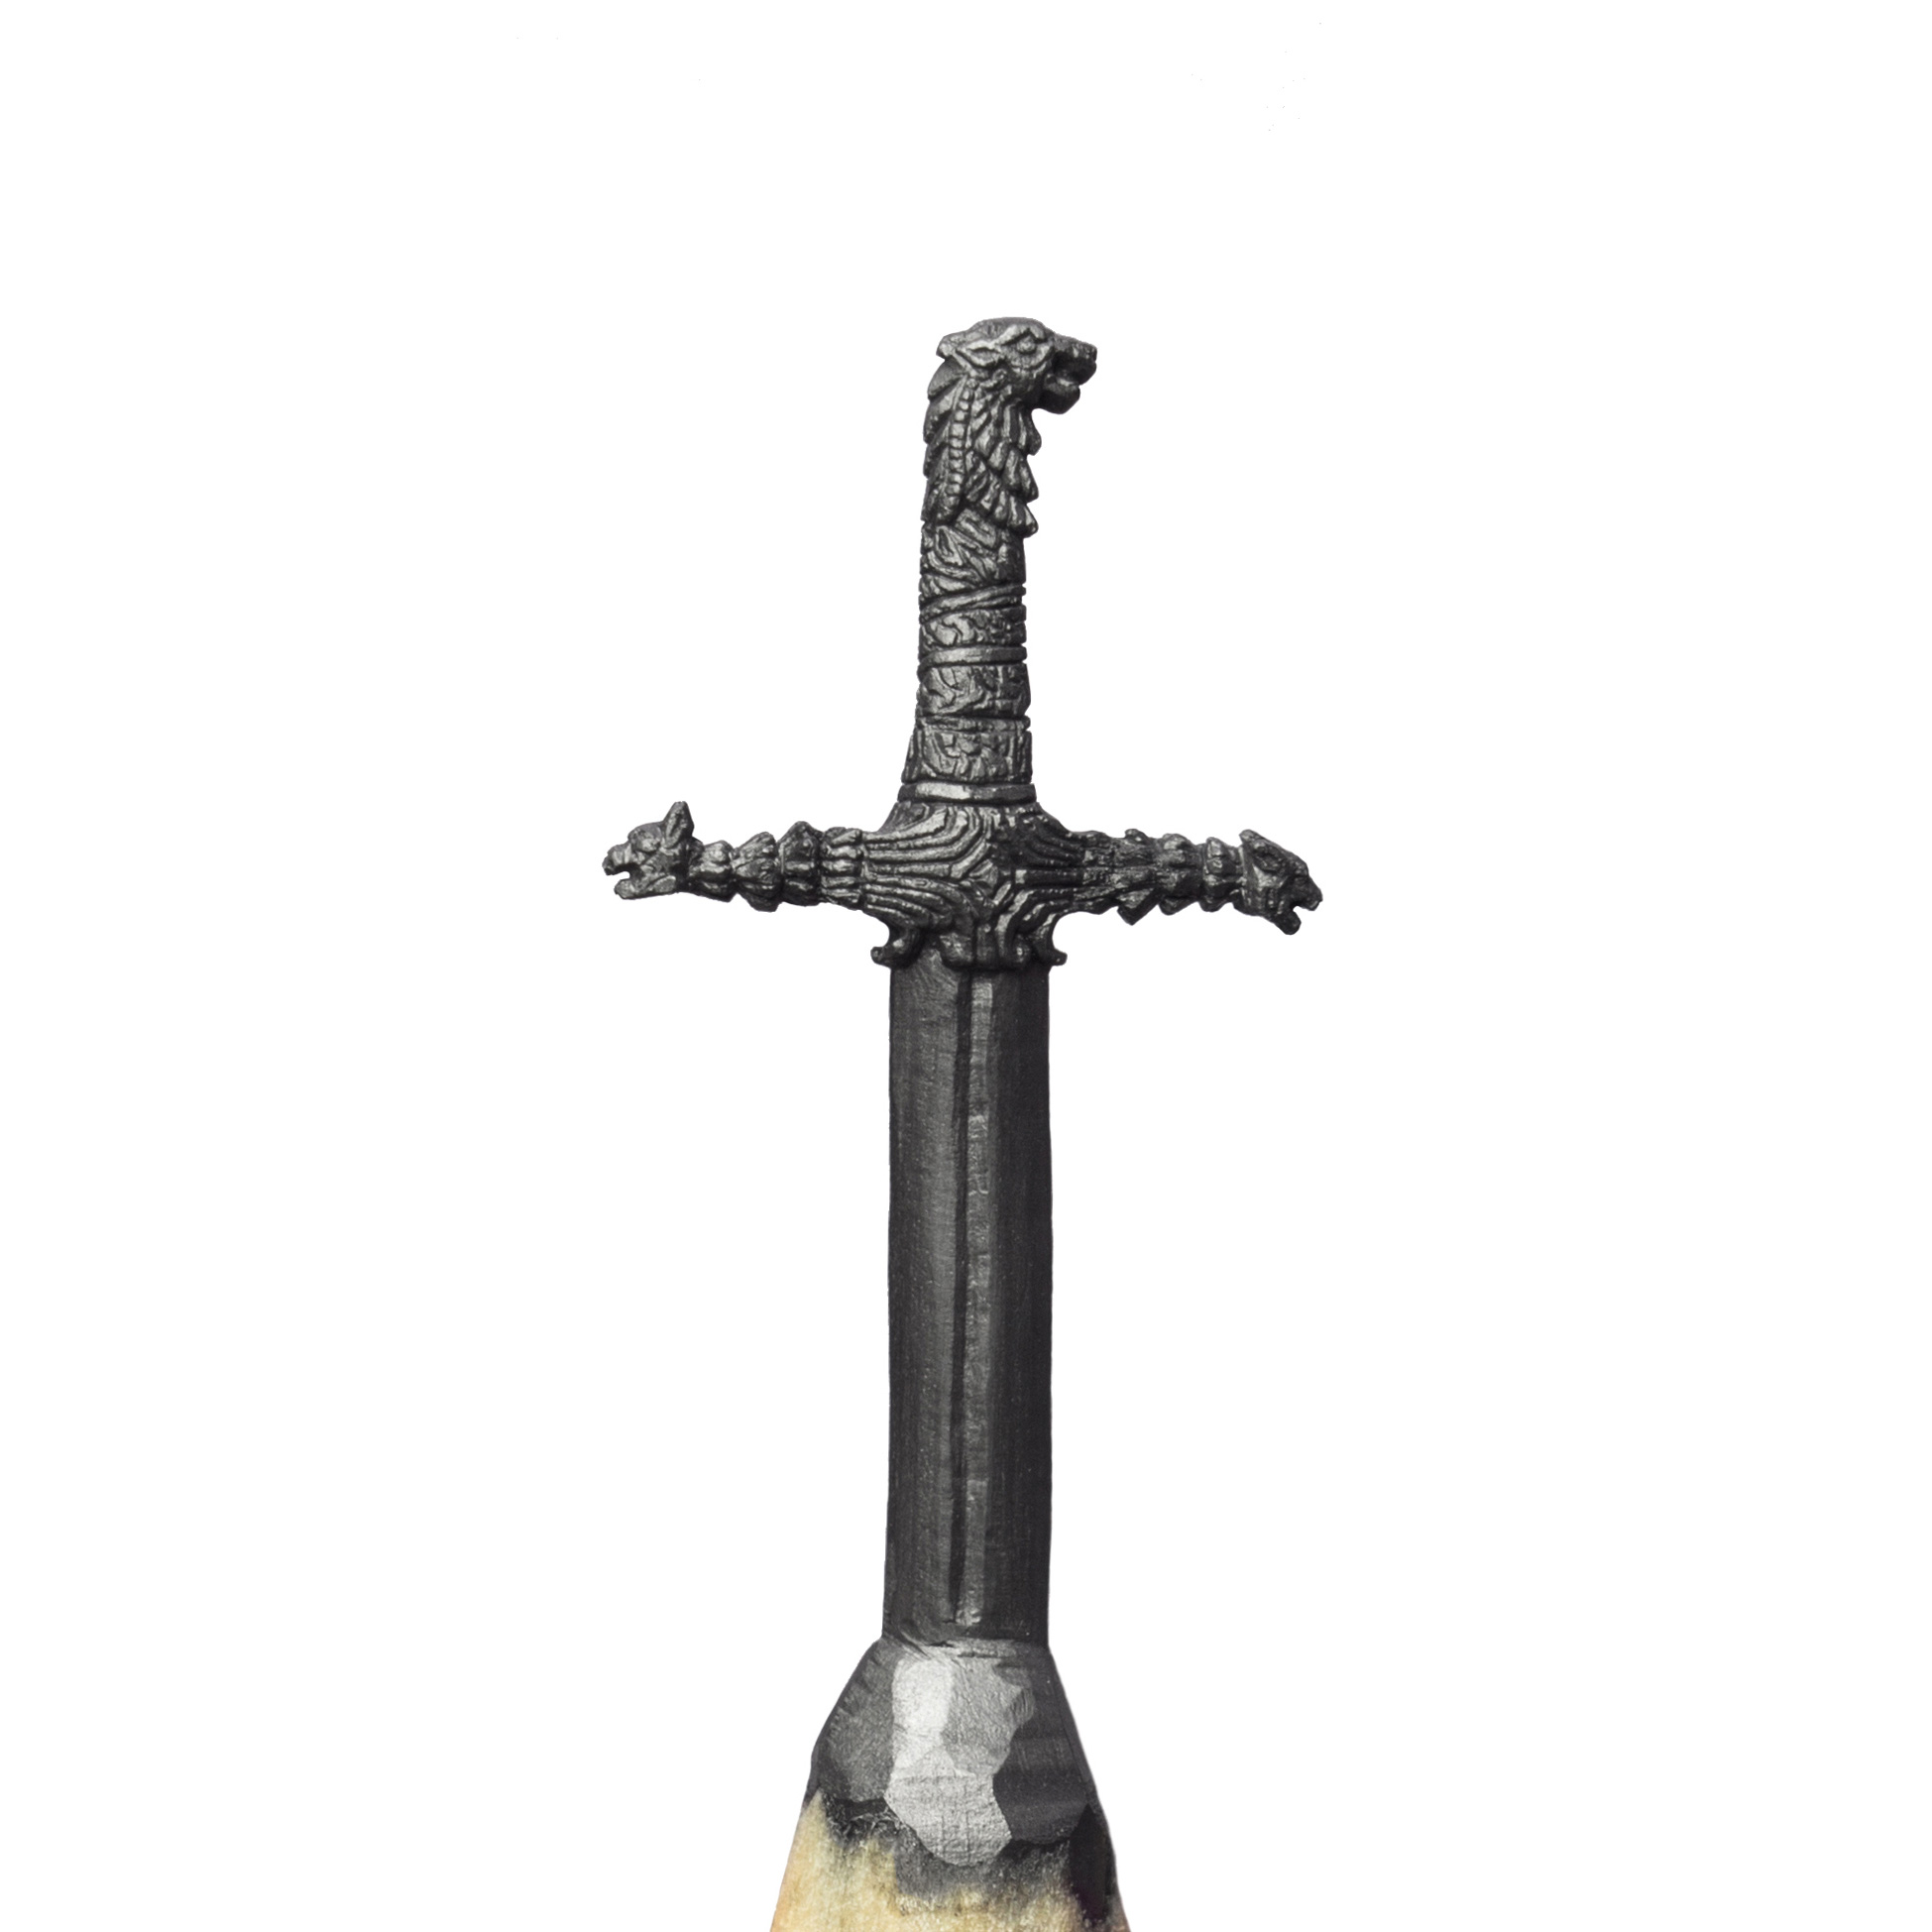 The sword – Brienne of Tarth’s Oathkeeper / www.salavatfidai.com